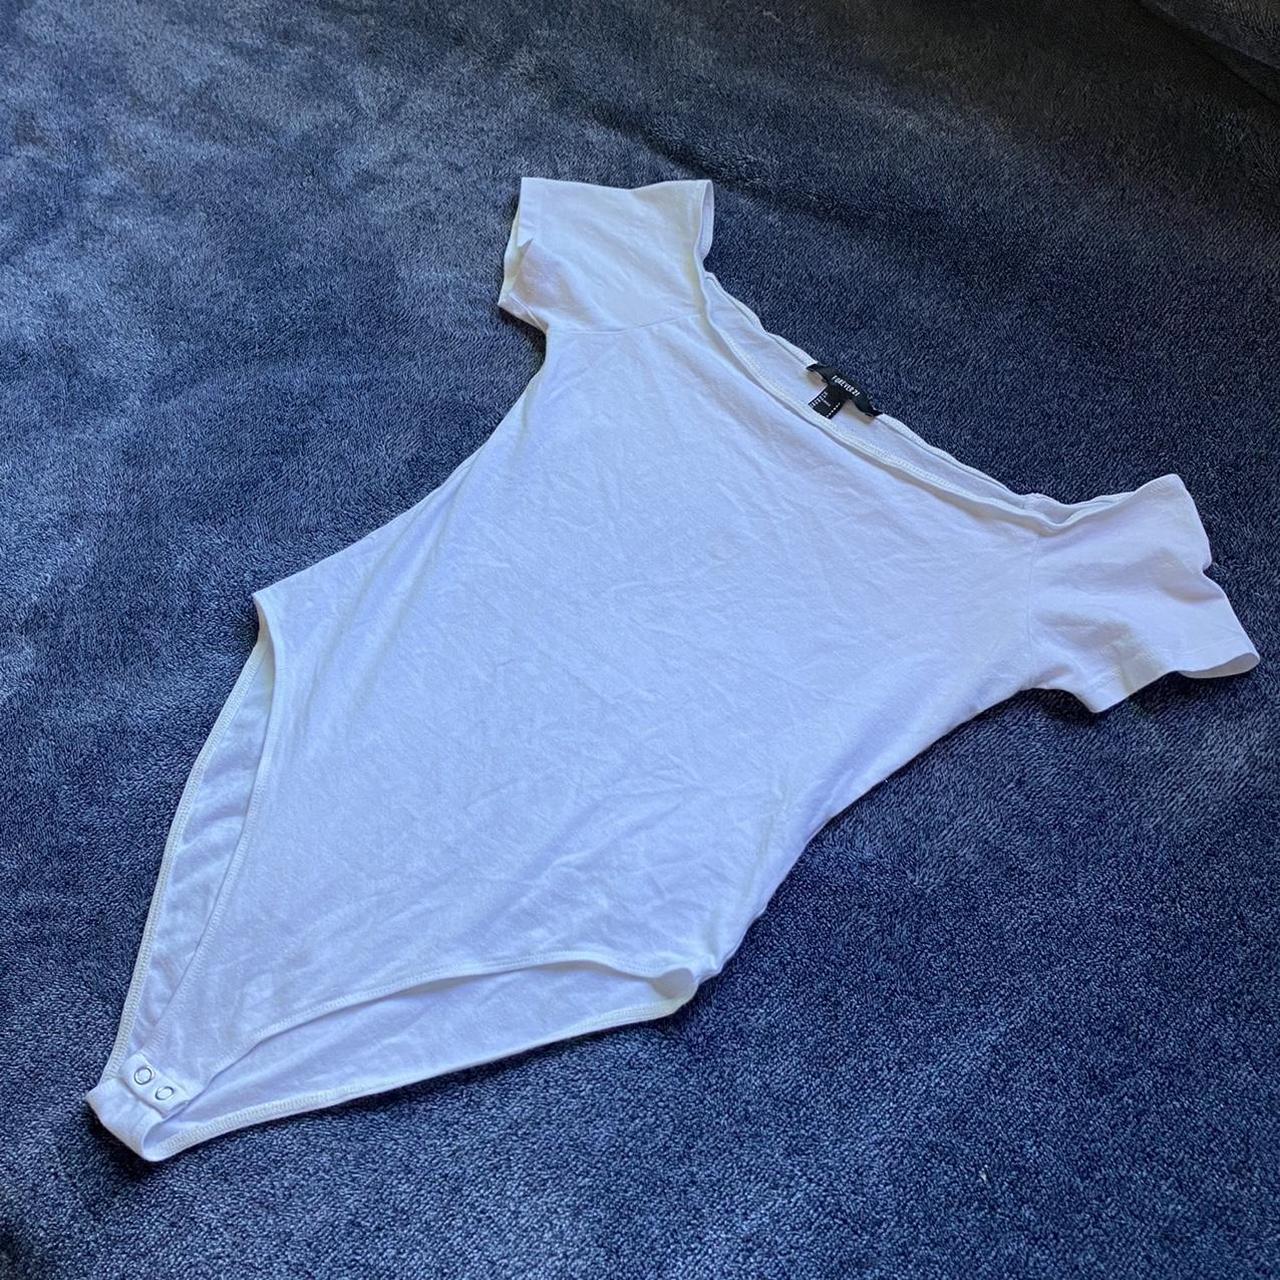 Forever 21 White Bodysuit • slightly off the... - Depop